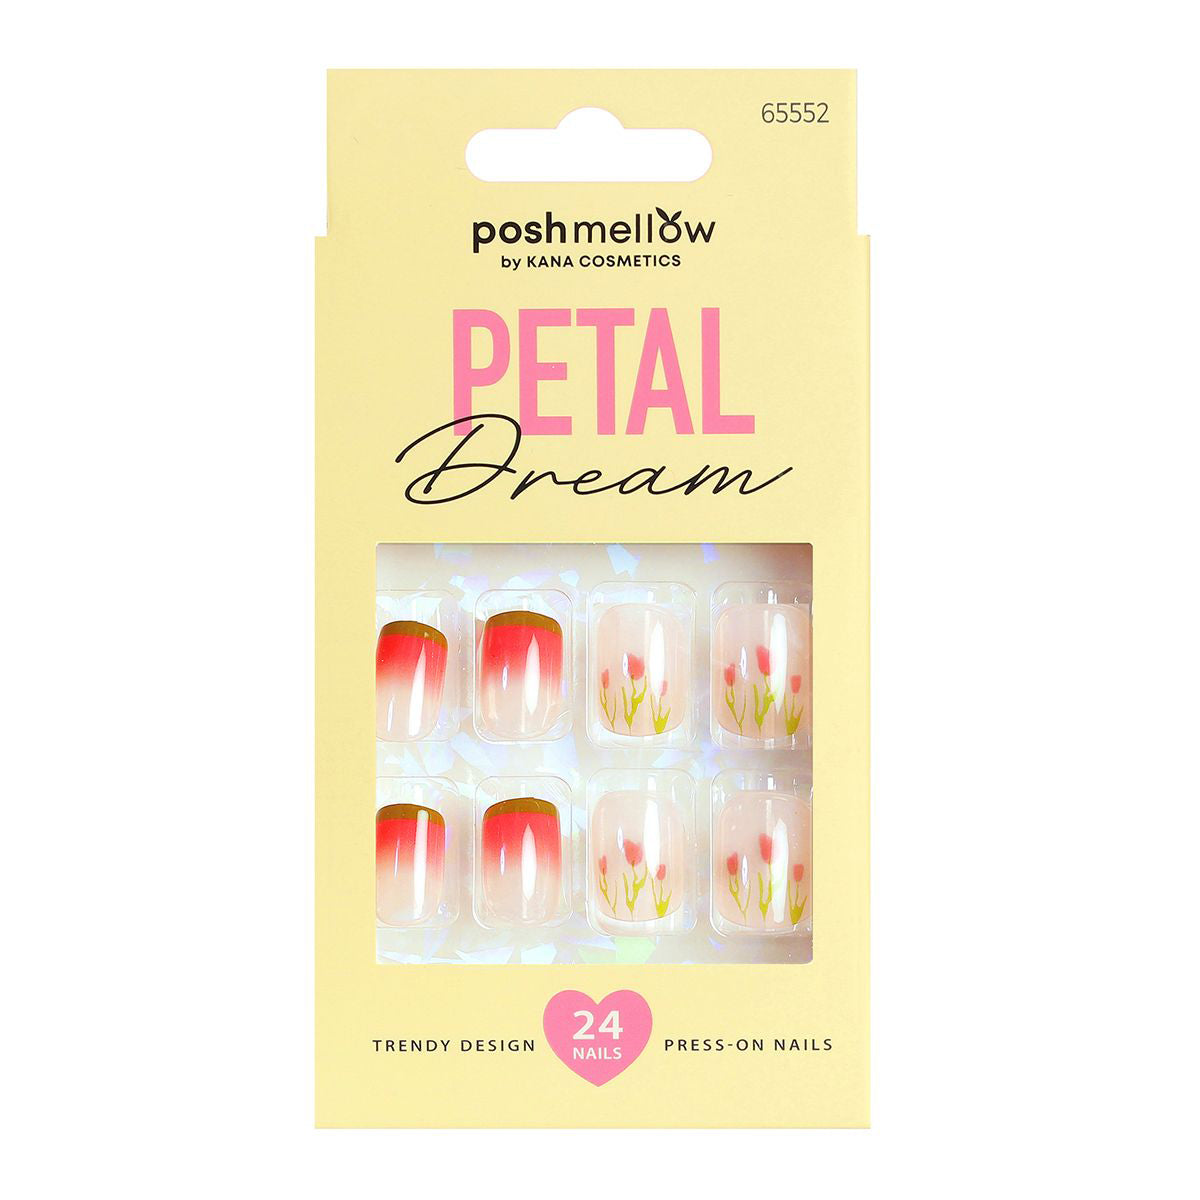 Petal Dream-Design-Nails-Press-on-Nails-65560